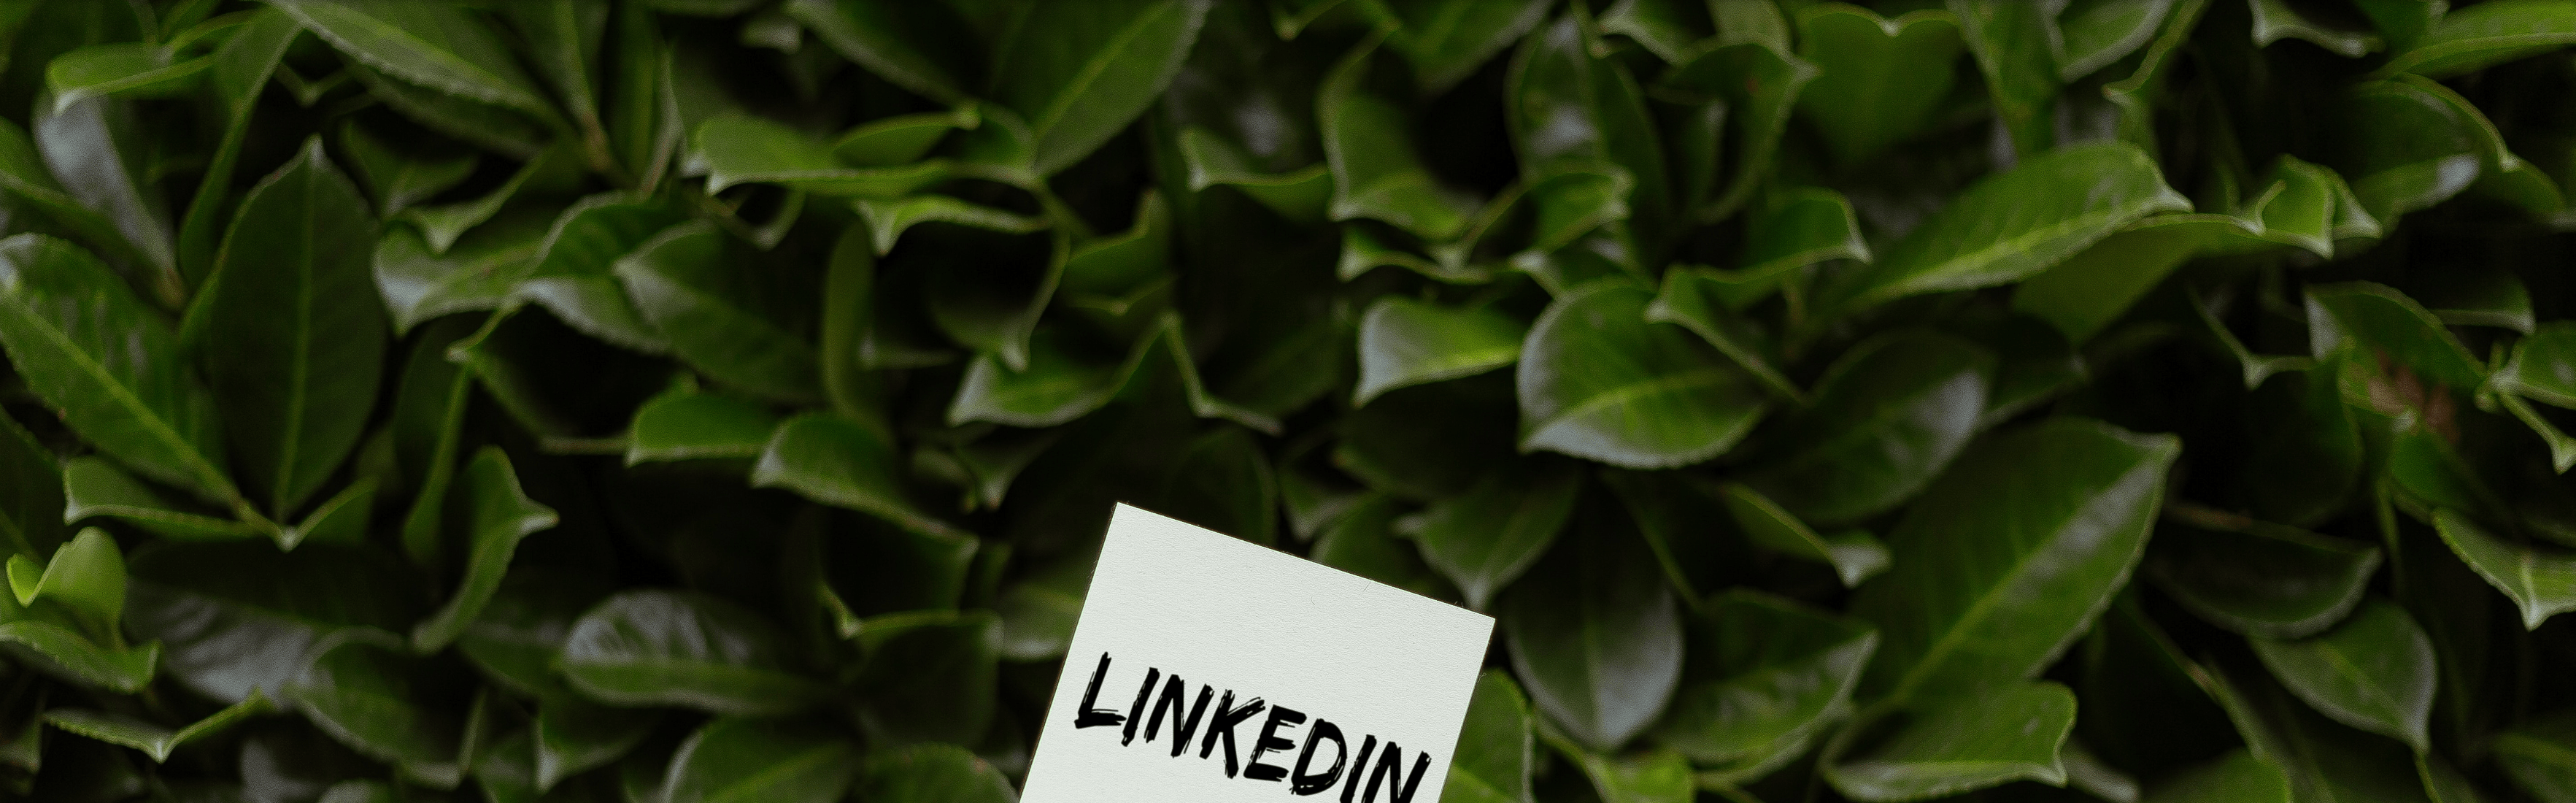 10 tips para posicionarte en LinkedIn